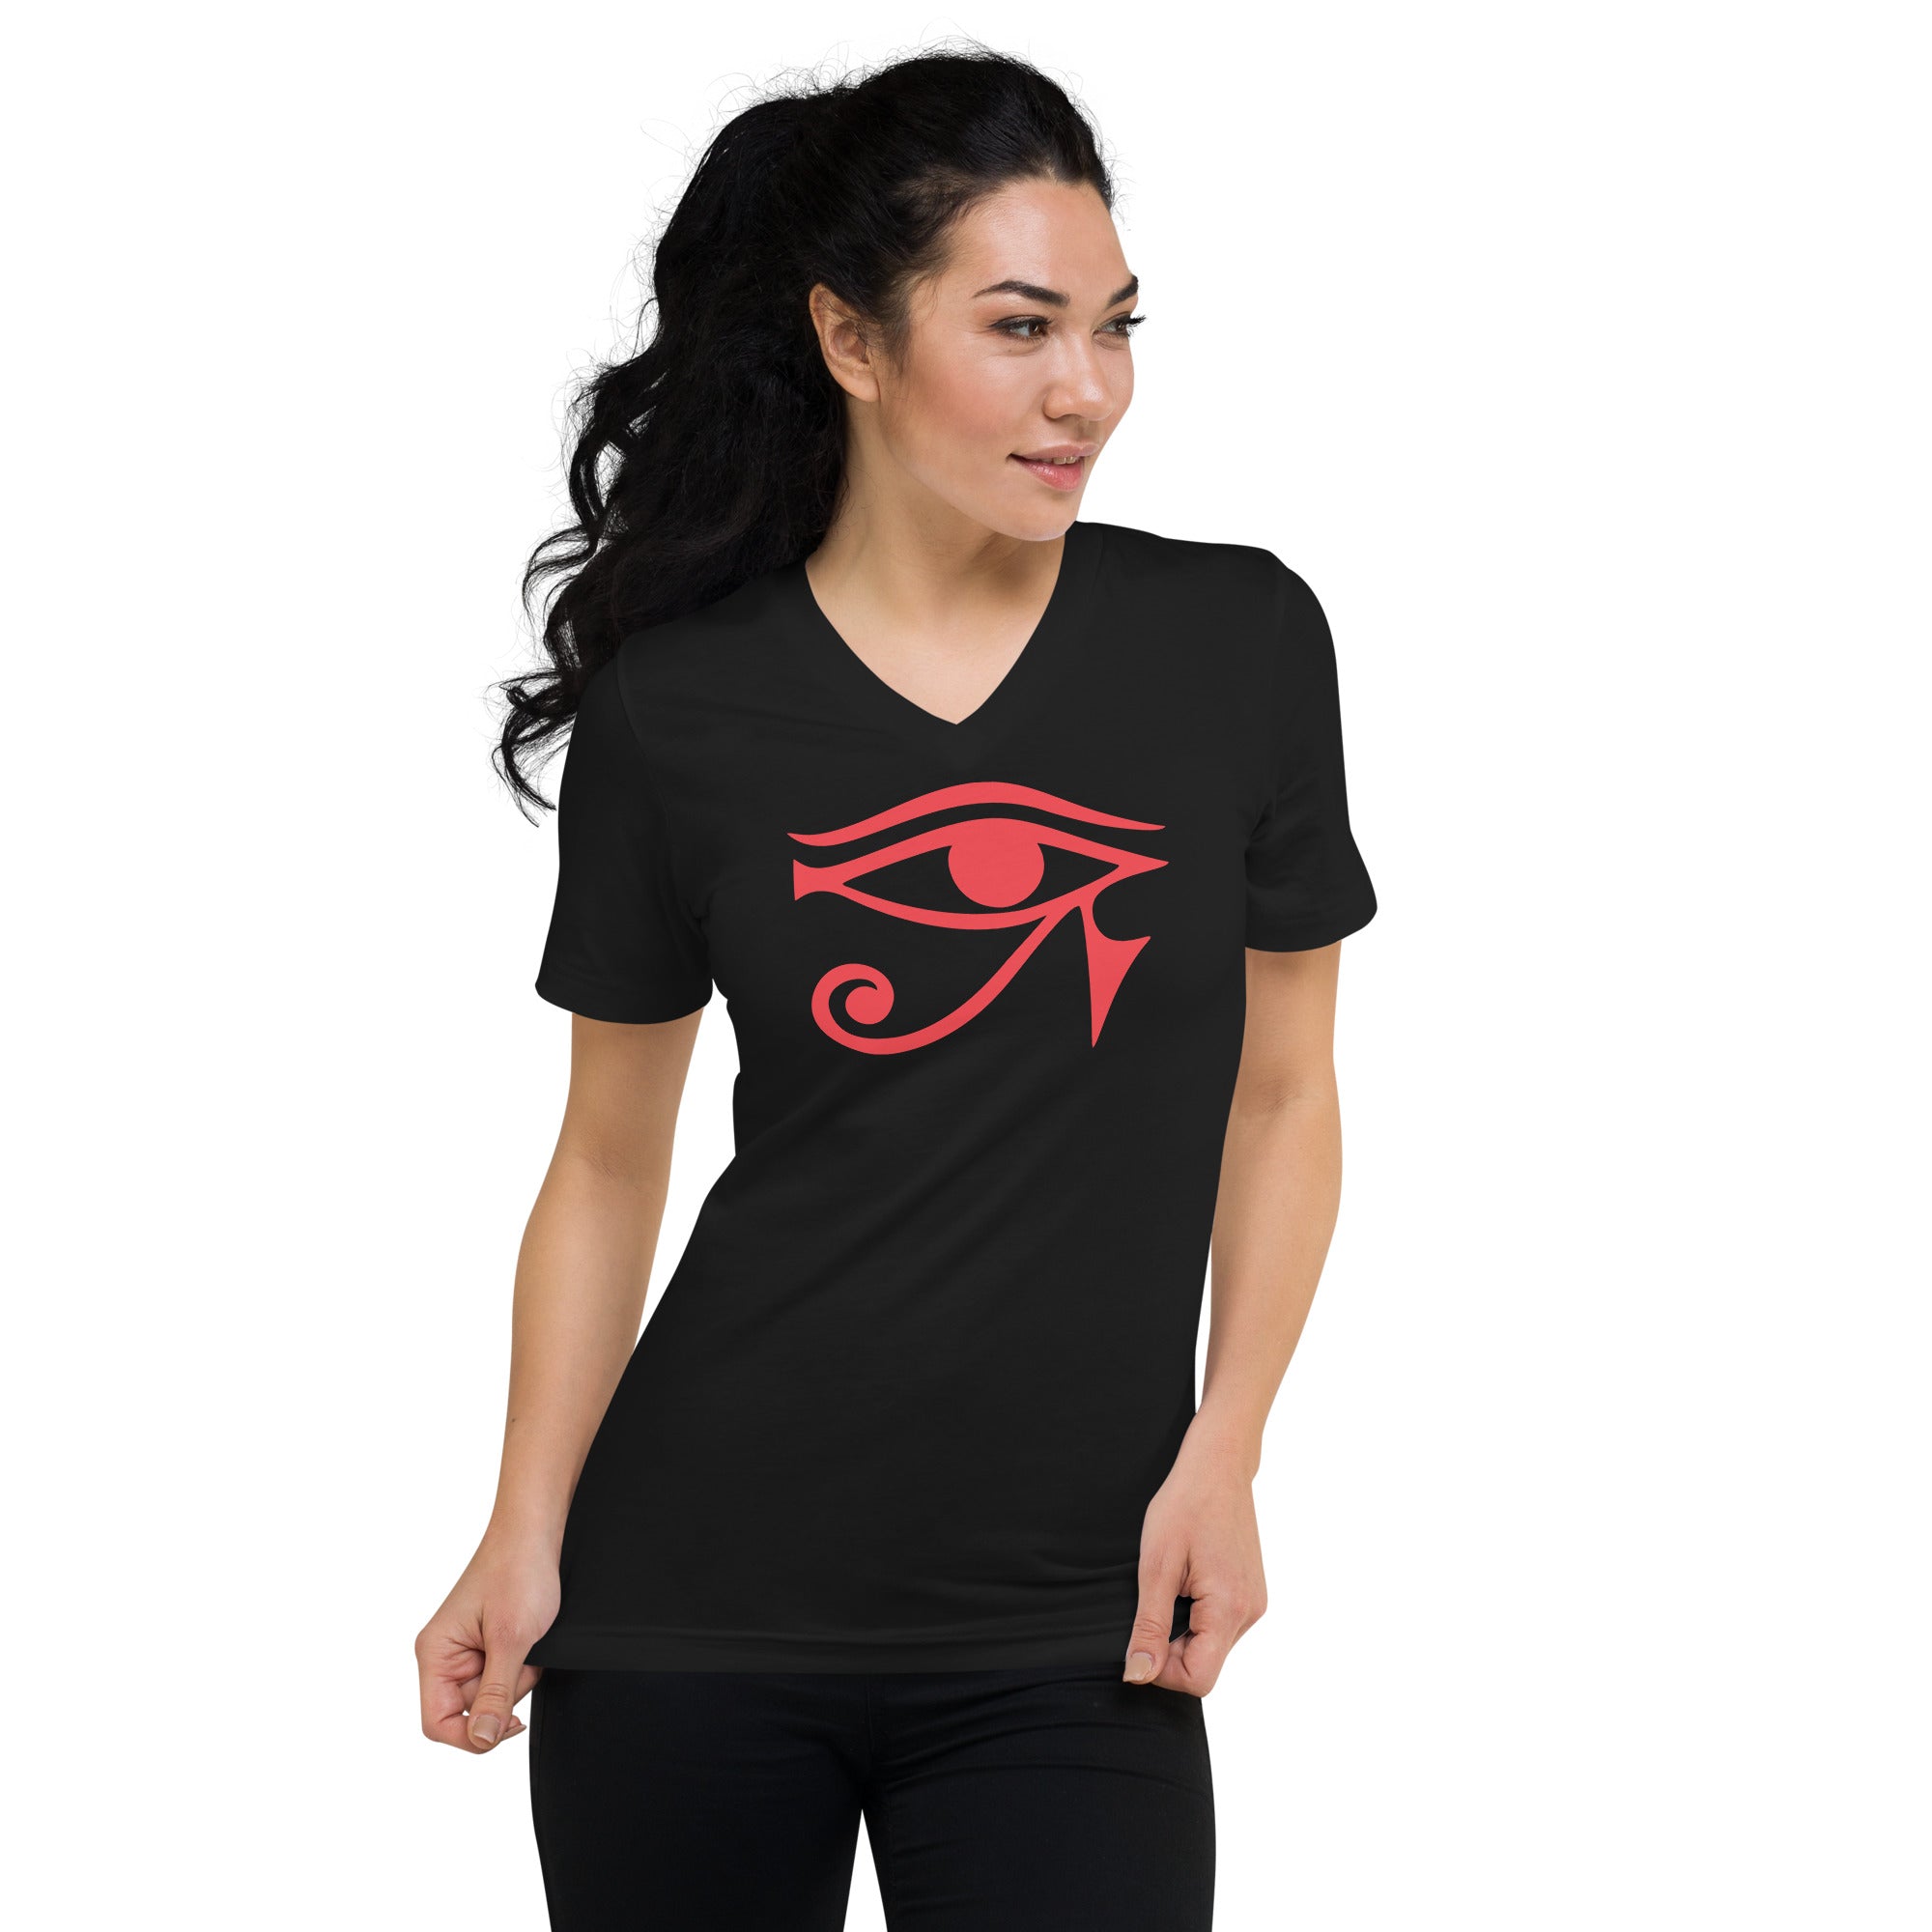 Eye of Ra Egyptian Goddess Women’s Short Sleeve V-Neck T-Shirt Red Print - Edge of Life Designs